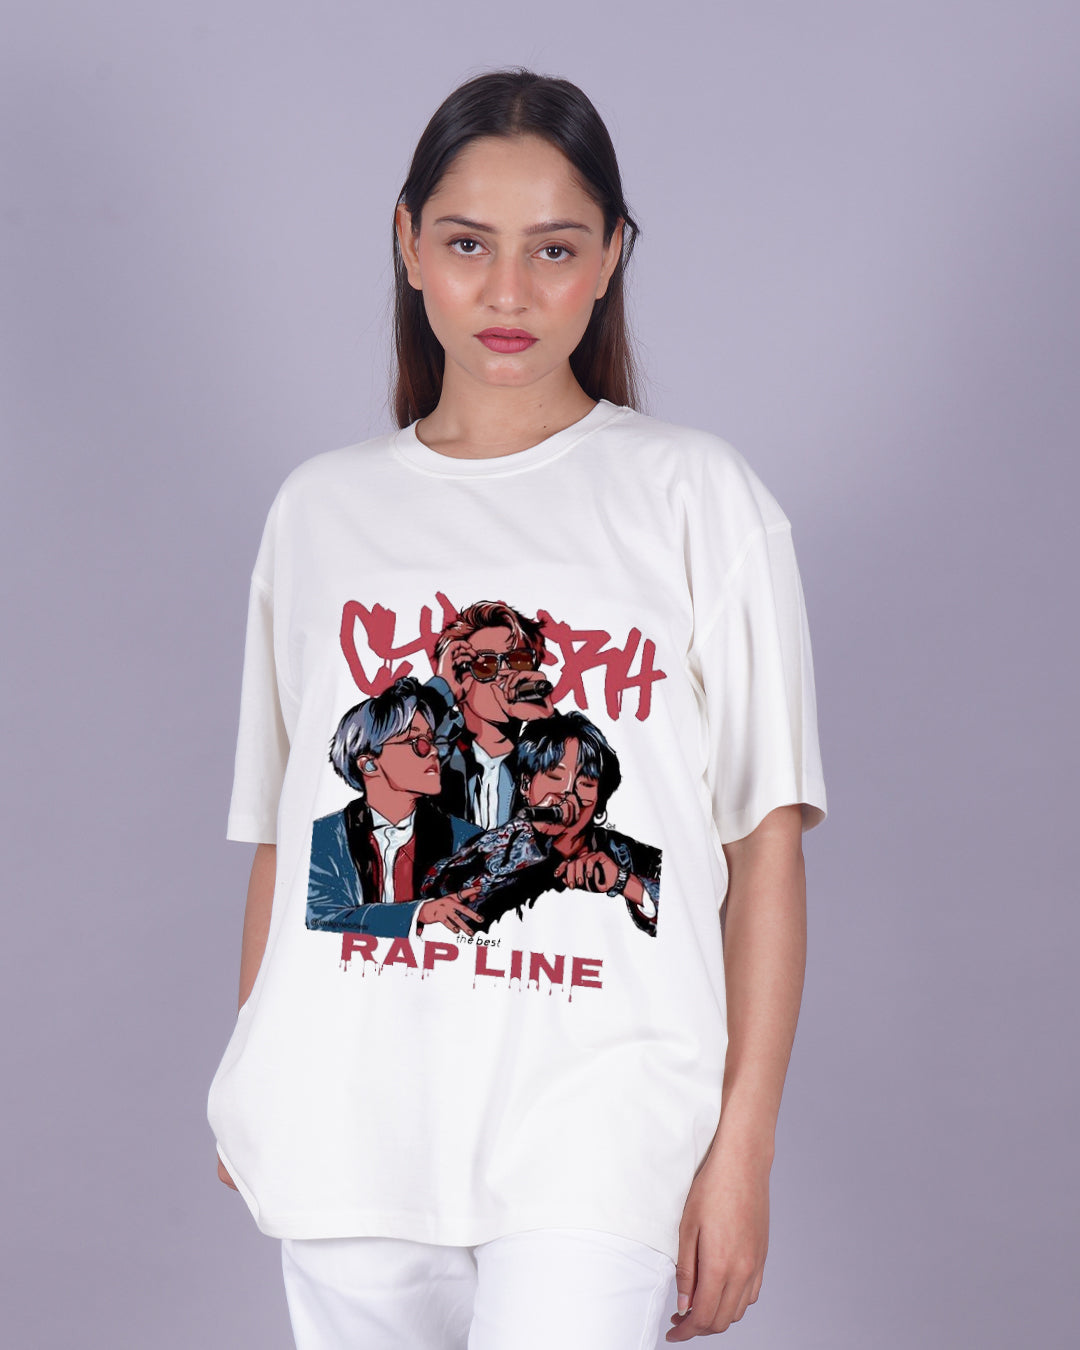 Bundle of 2 Women's BTS Oversized T-shirts: RM & Rapline